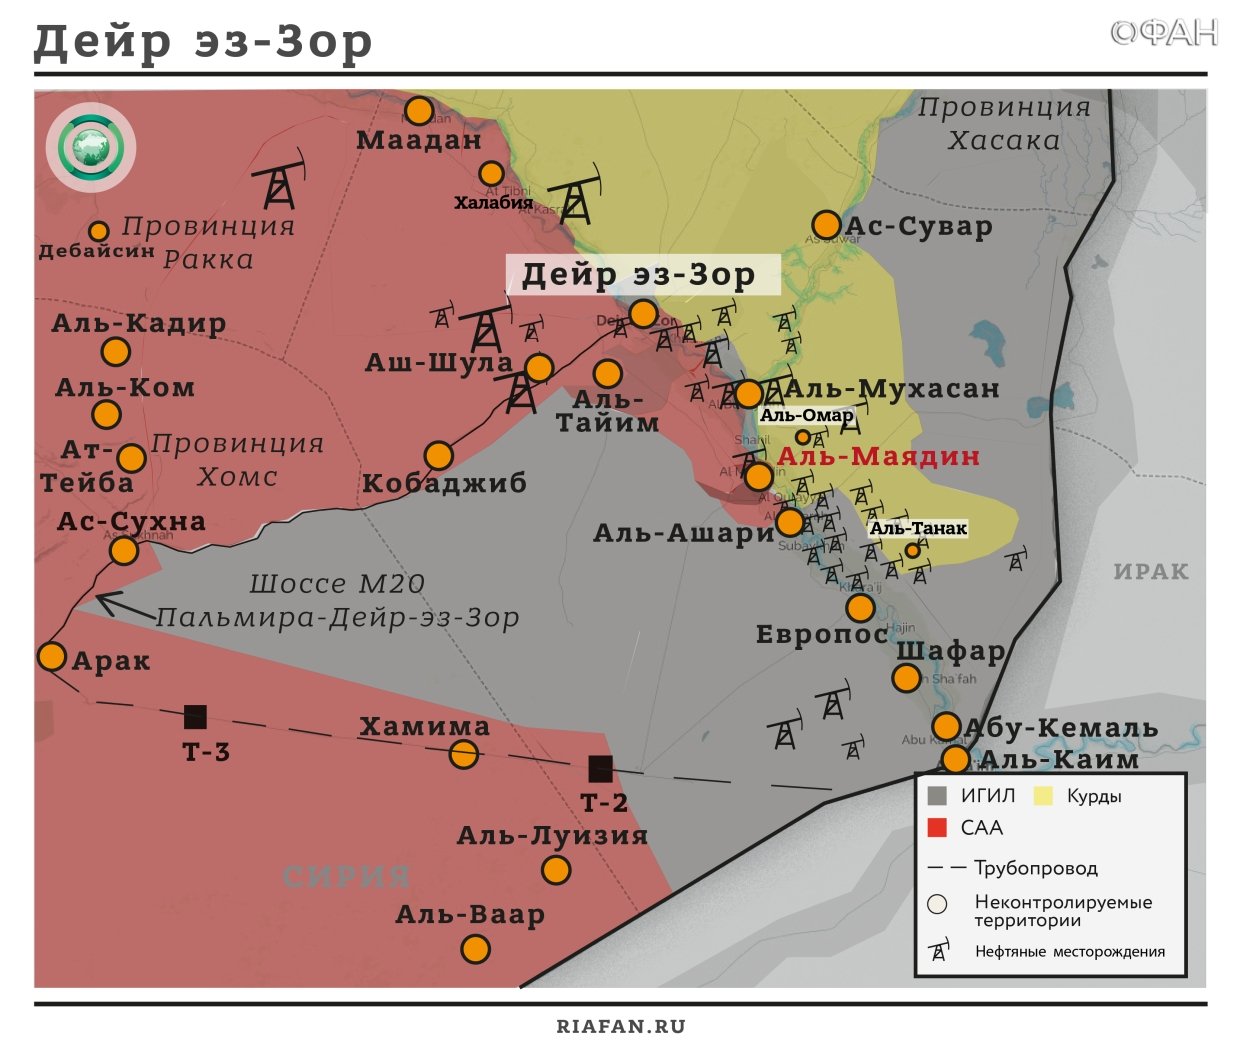 Сирия новости 27 октября 22.30: ВКС РФ обеспечивают продвижение САА в Хаме, три беженца погибло под огнем SDF в Дейр эз-Зоре  